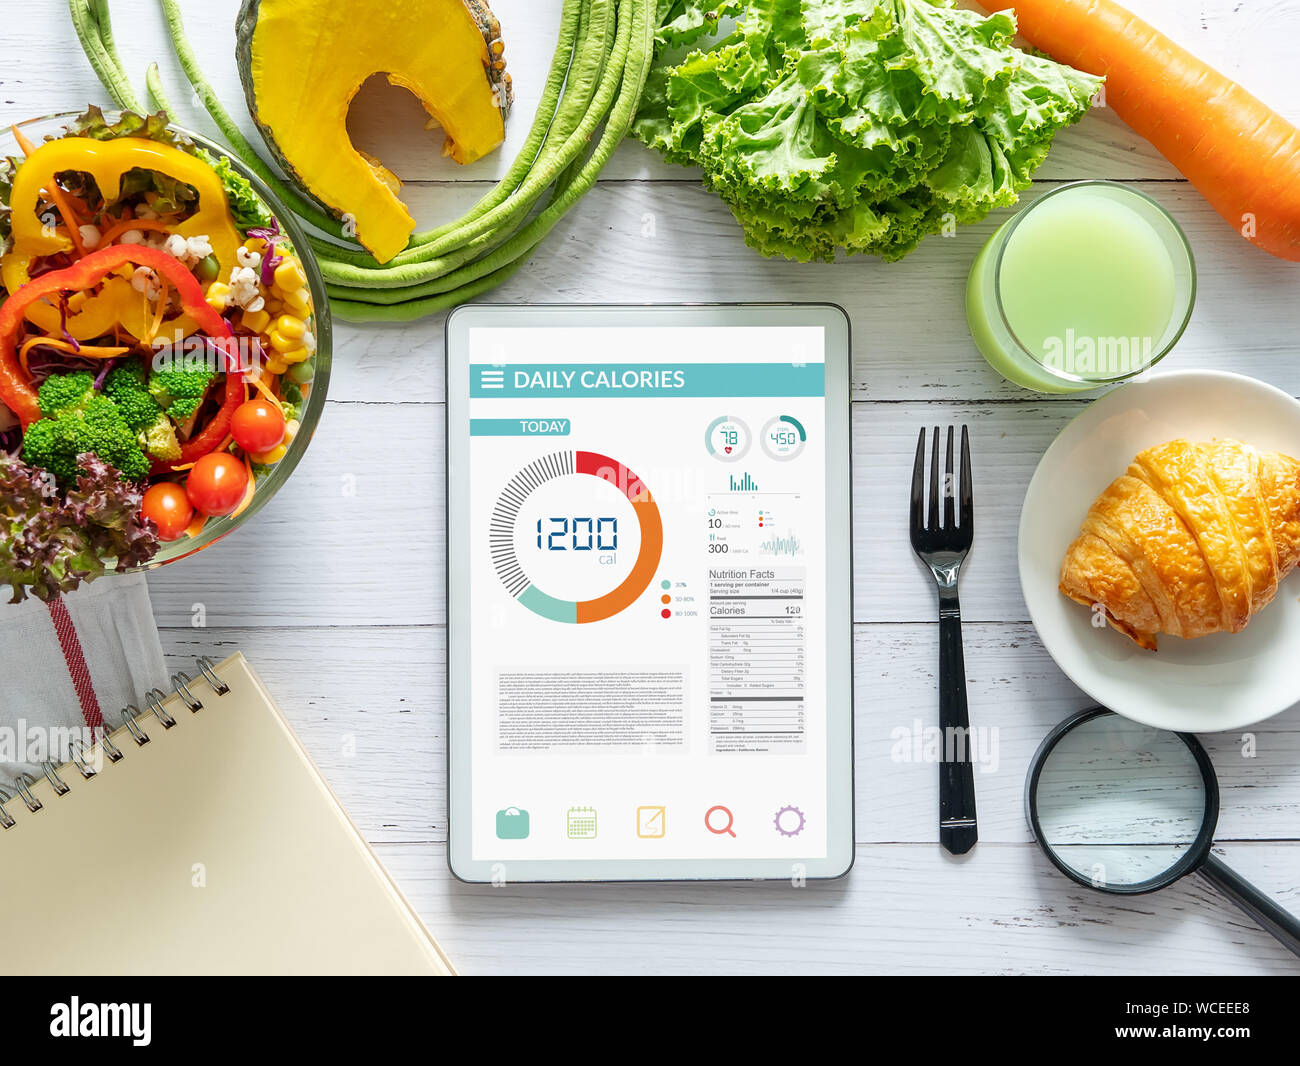 Kalorien zählen, Ernährung, der Kontrolle und Gewichtsverlust Konzept. Tablet mit Kalorienzähler Anwendung auf dem Bildschirm am Esstisch mit Salat, Obst j Stockfoto